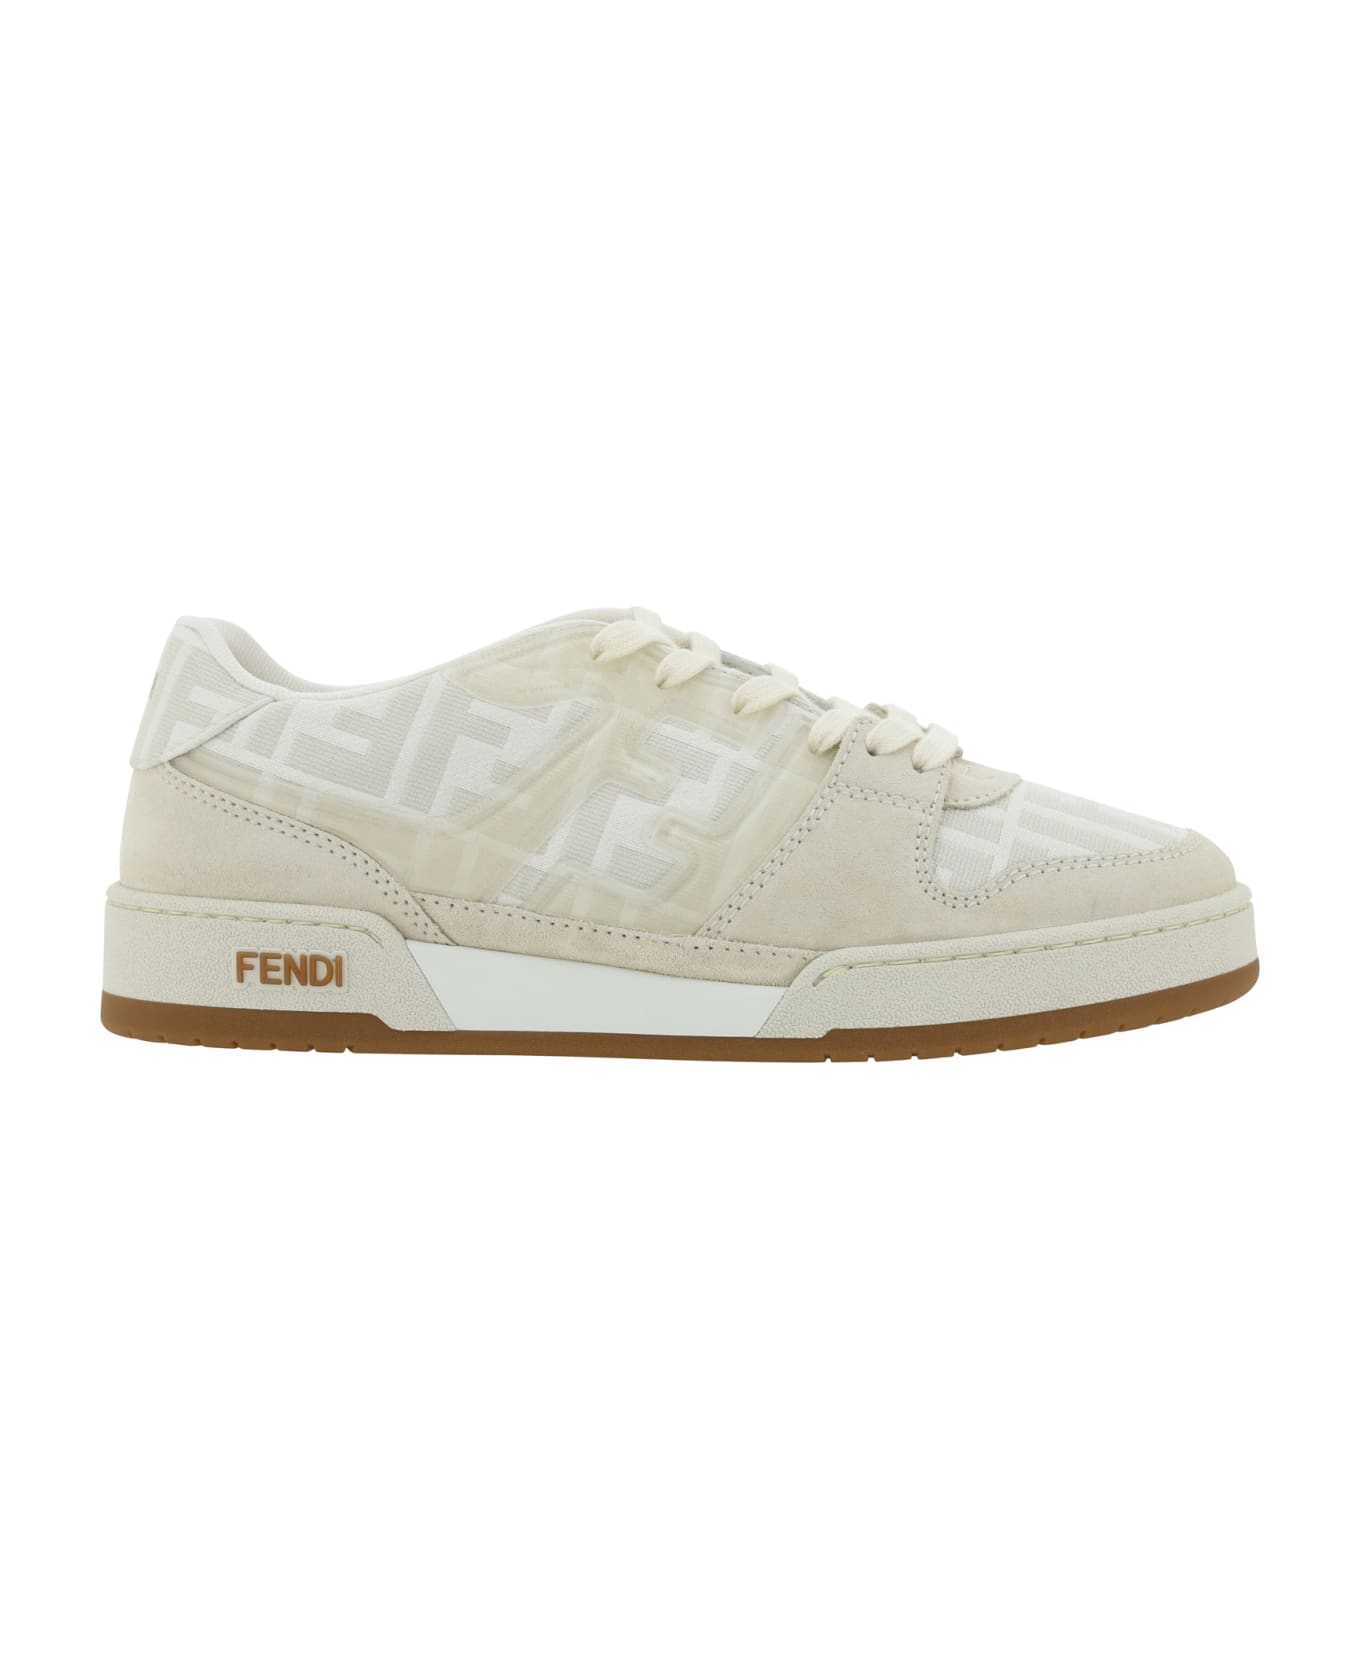 Fendi Match Sneaker - Granito/avorio